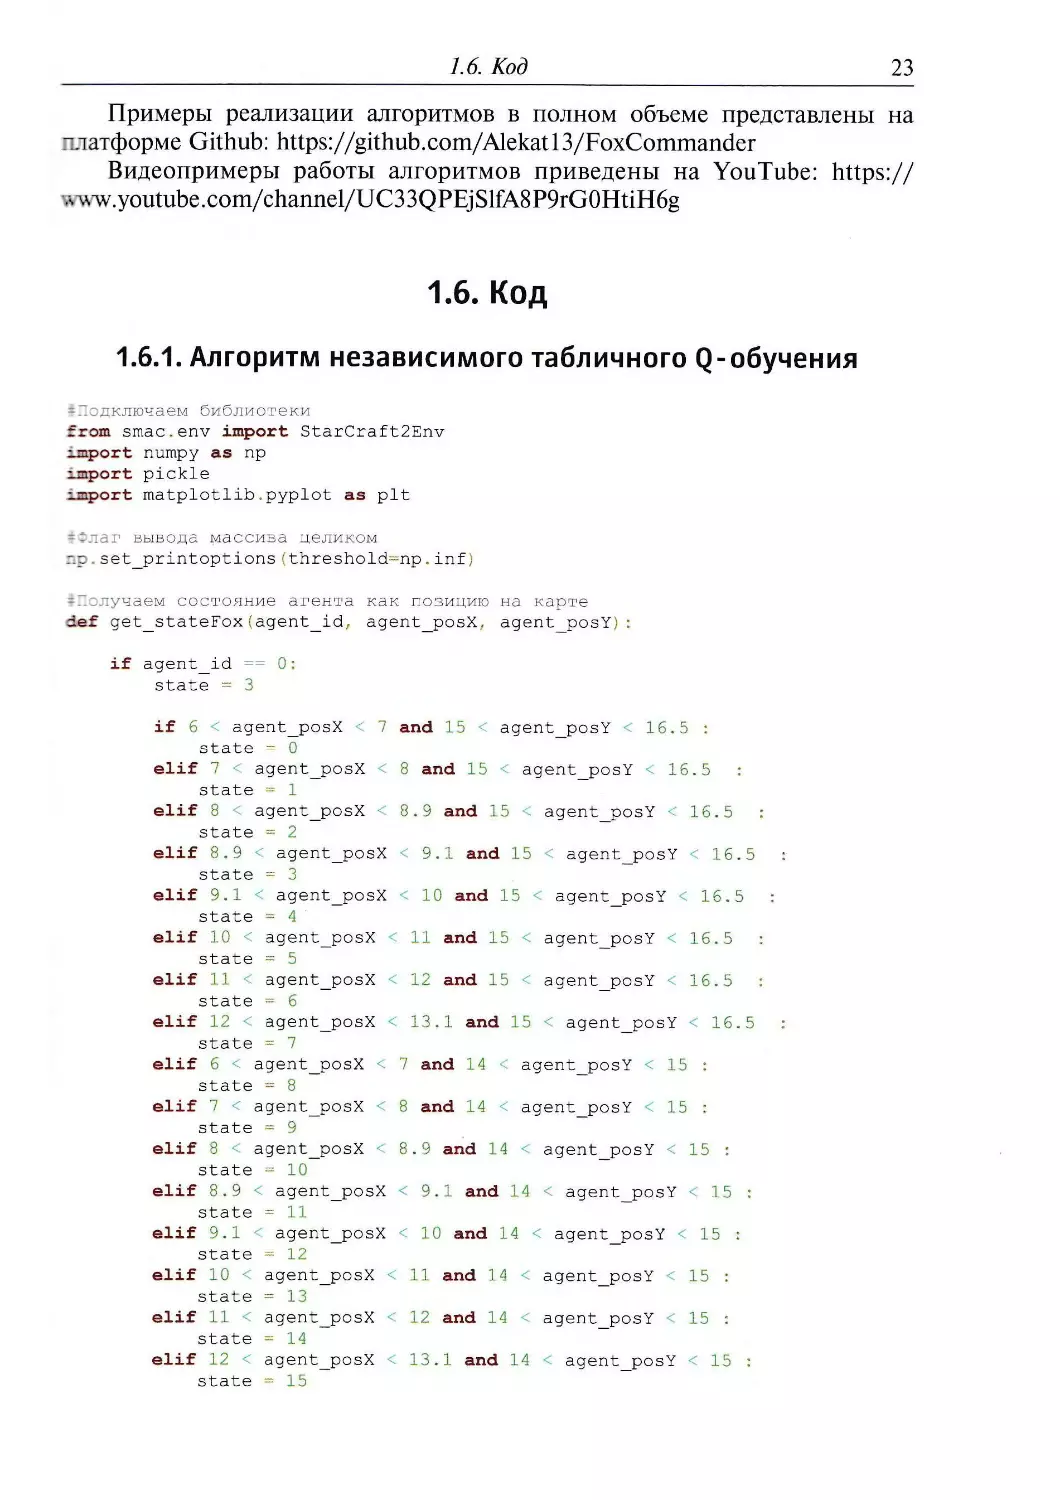 1.6. Код
1.6.1. Алгоритм независимого табличного Q-обучения